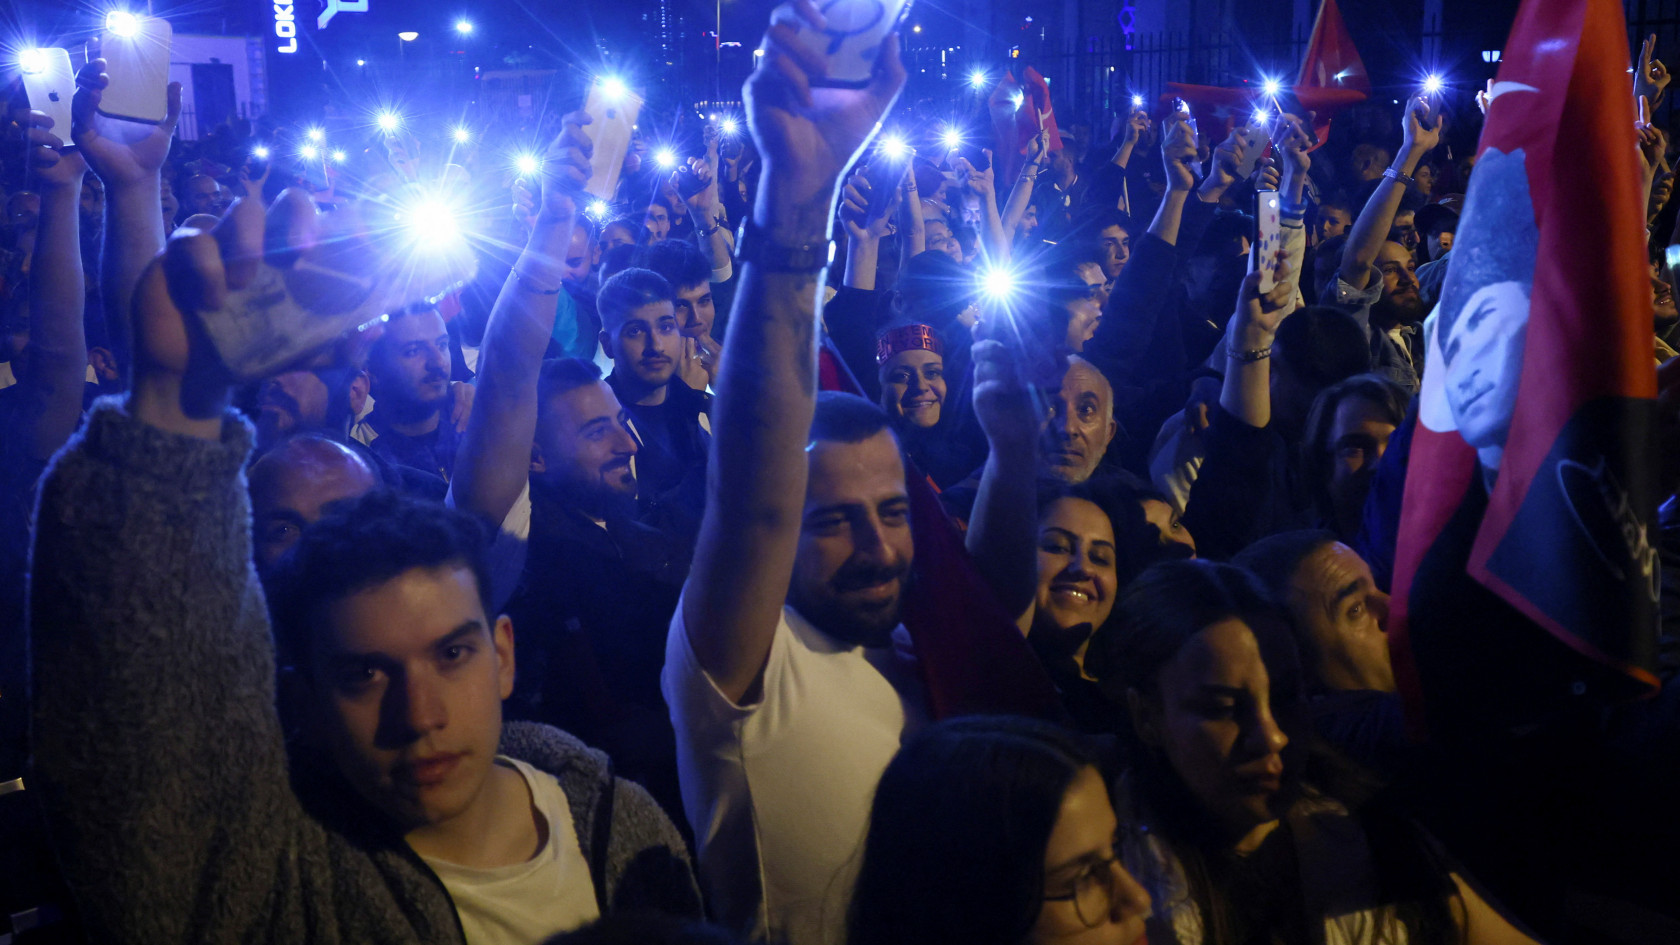 Mindkét jelölt 50 százalék alatt, egyre valószínűbb a második forduló a török elnökválasztáson